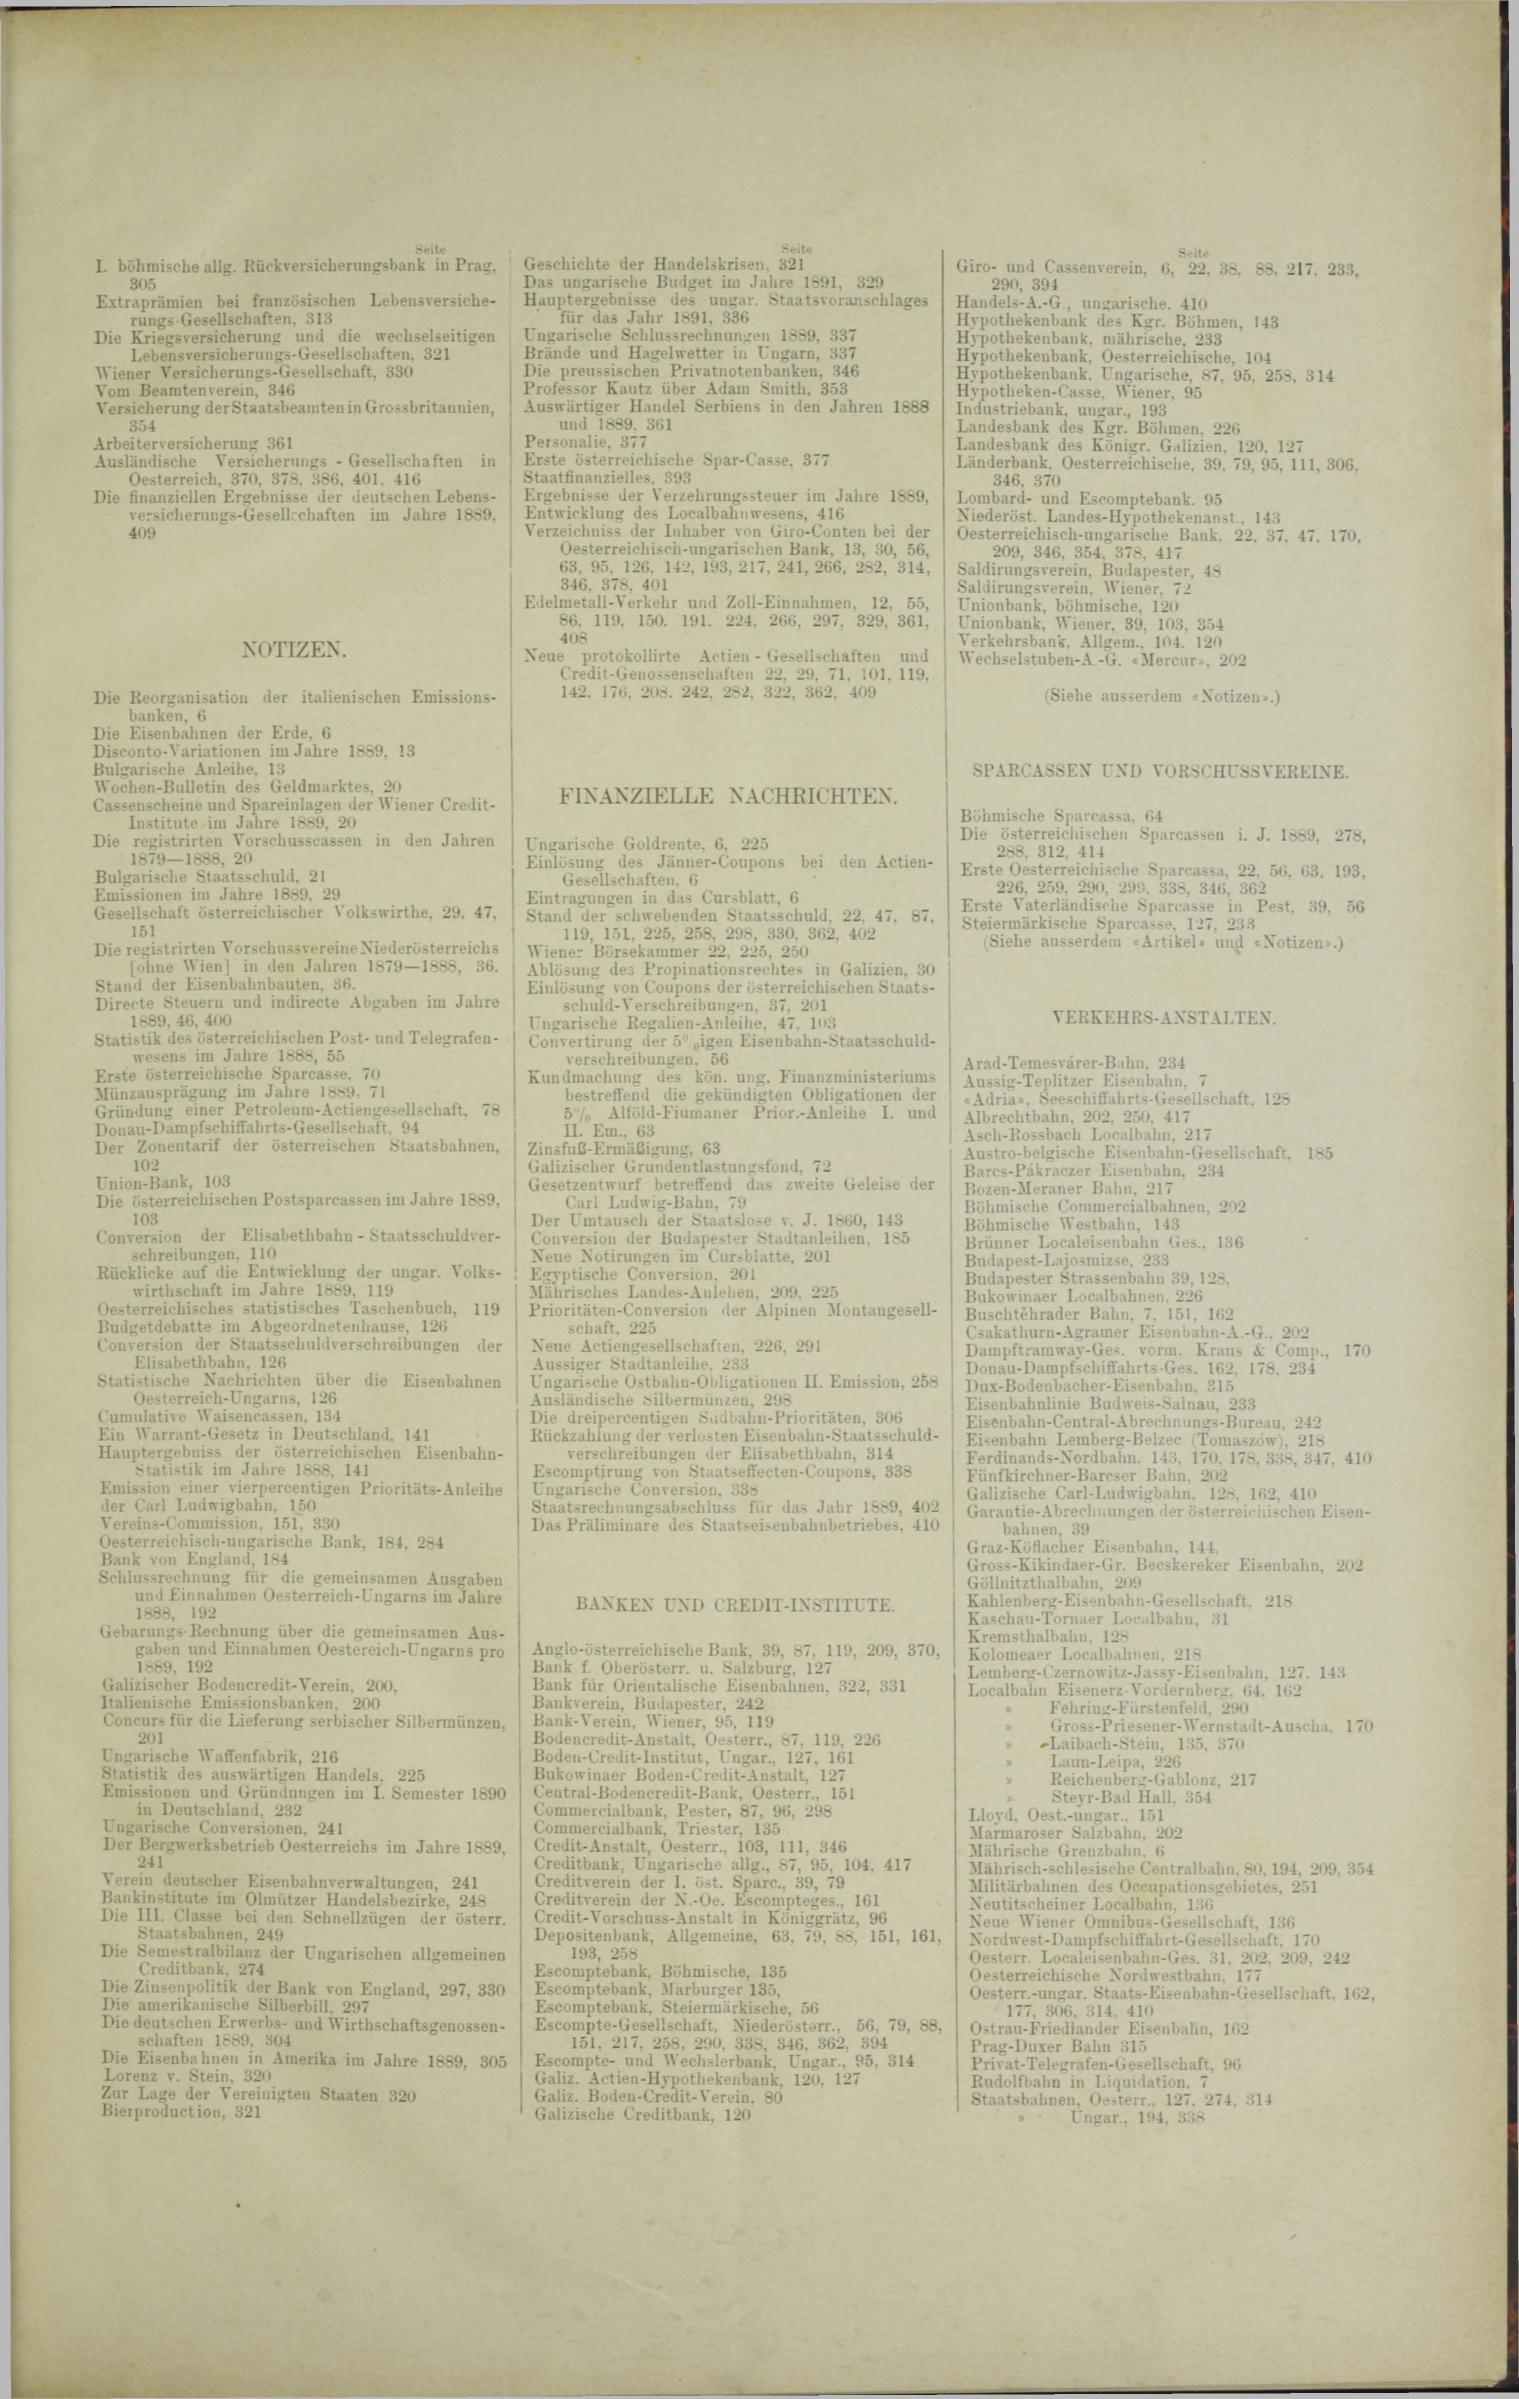 Der Tresor 17.04.1890 - Seite 11